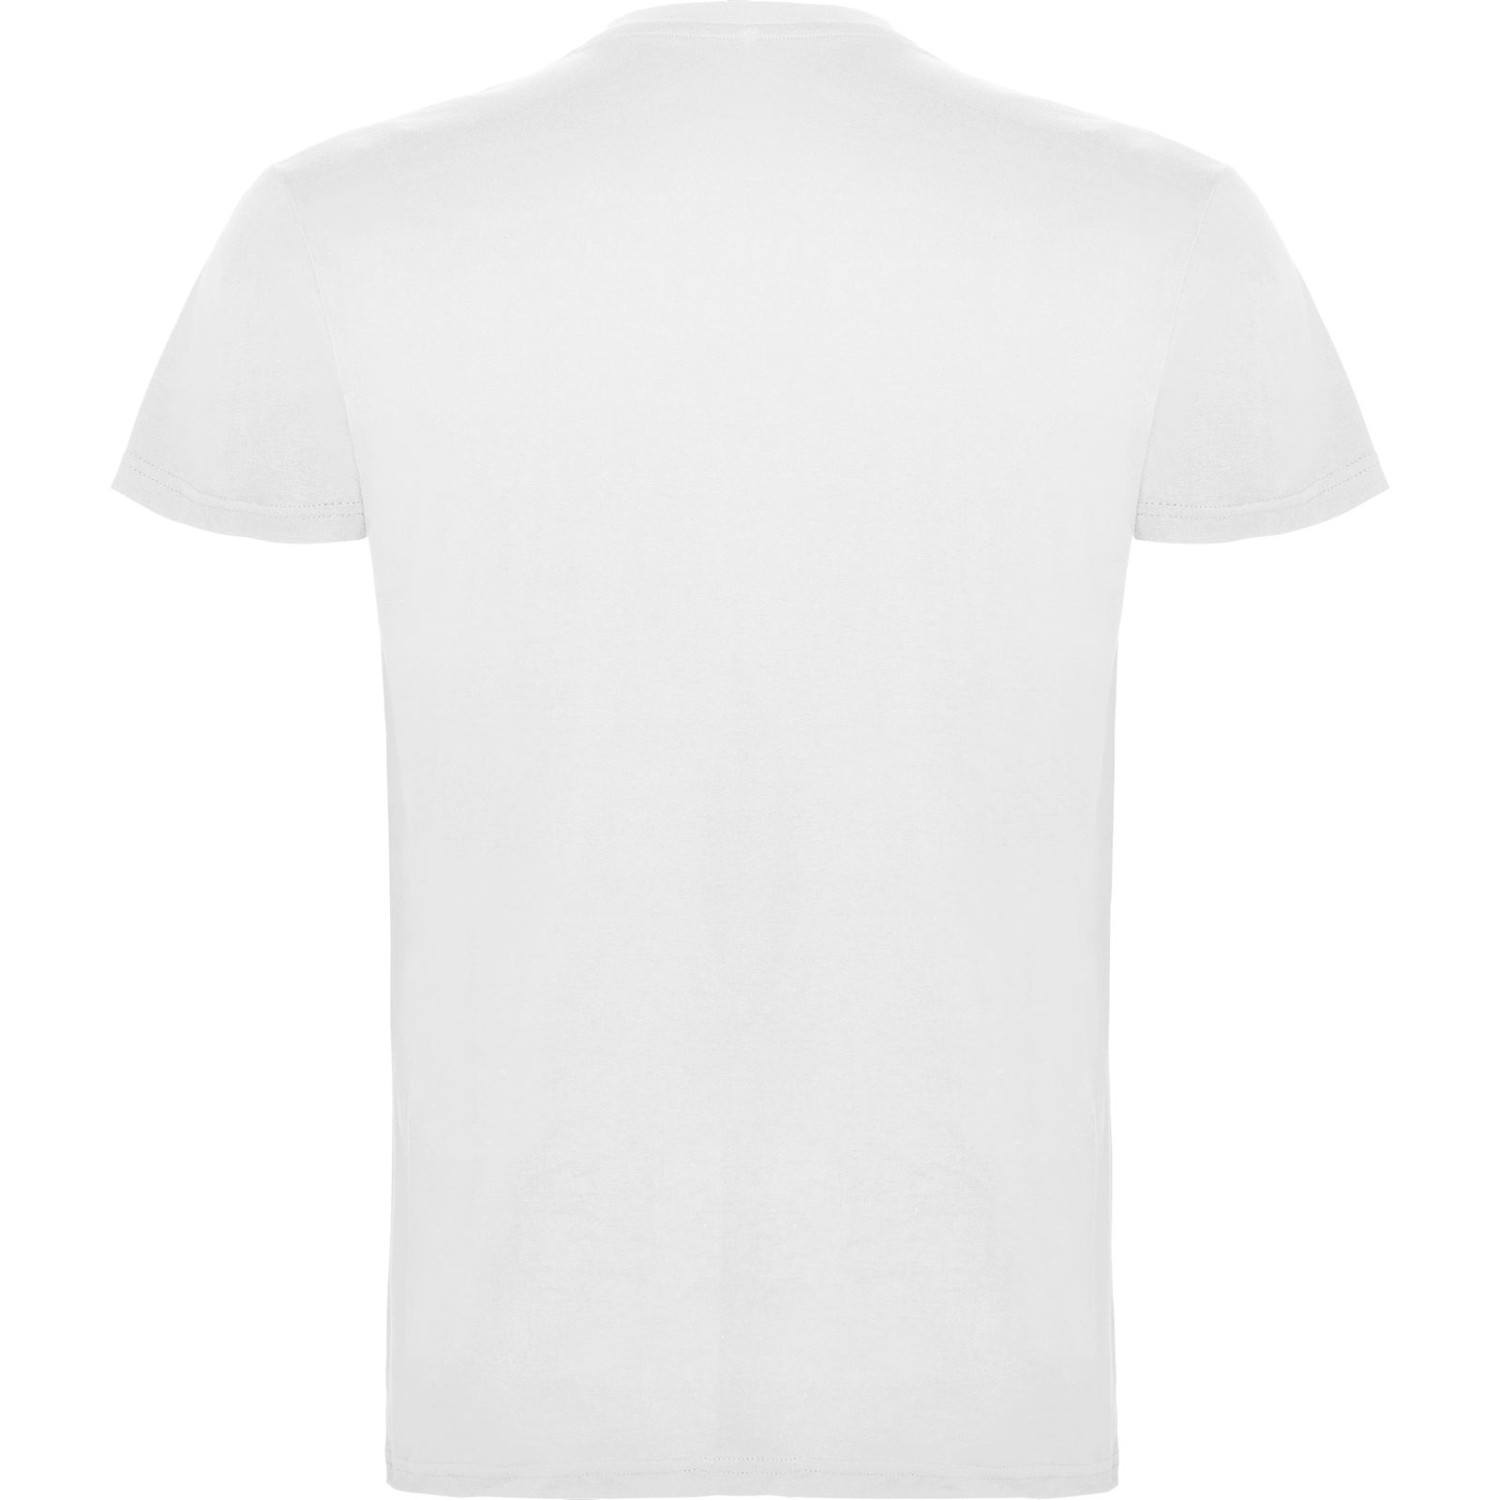 3. Foto T-Shirt BEAGLE Kurzarm Rundhals mit Druck (Farbe: weiß Größe: XXL)